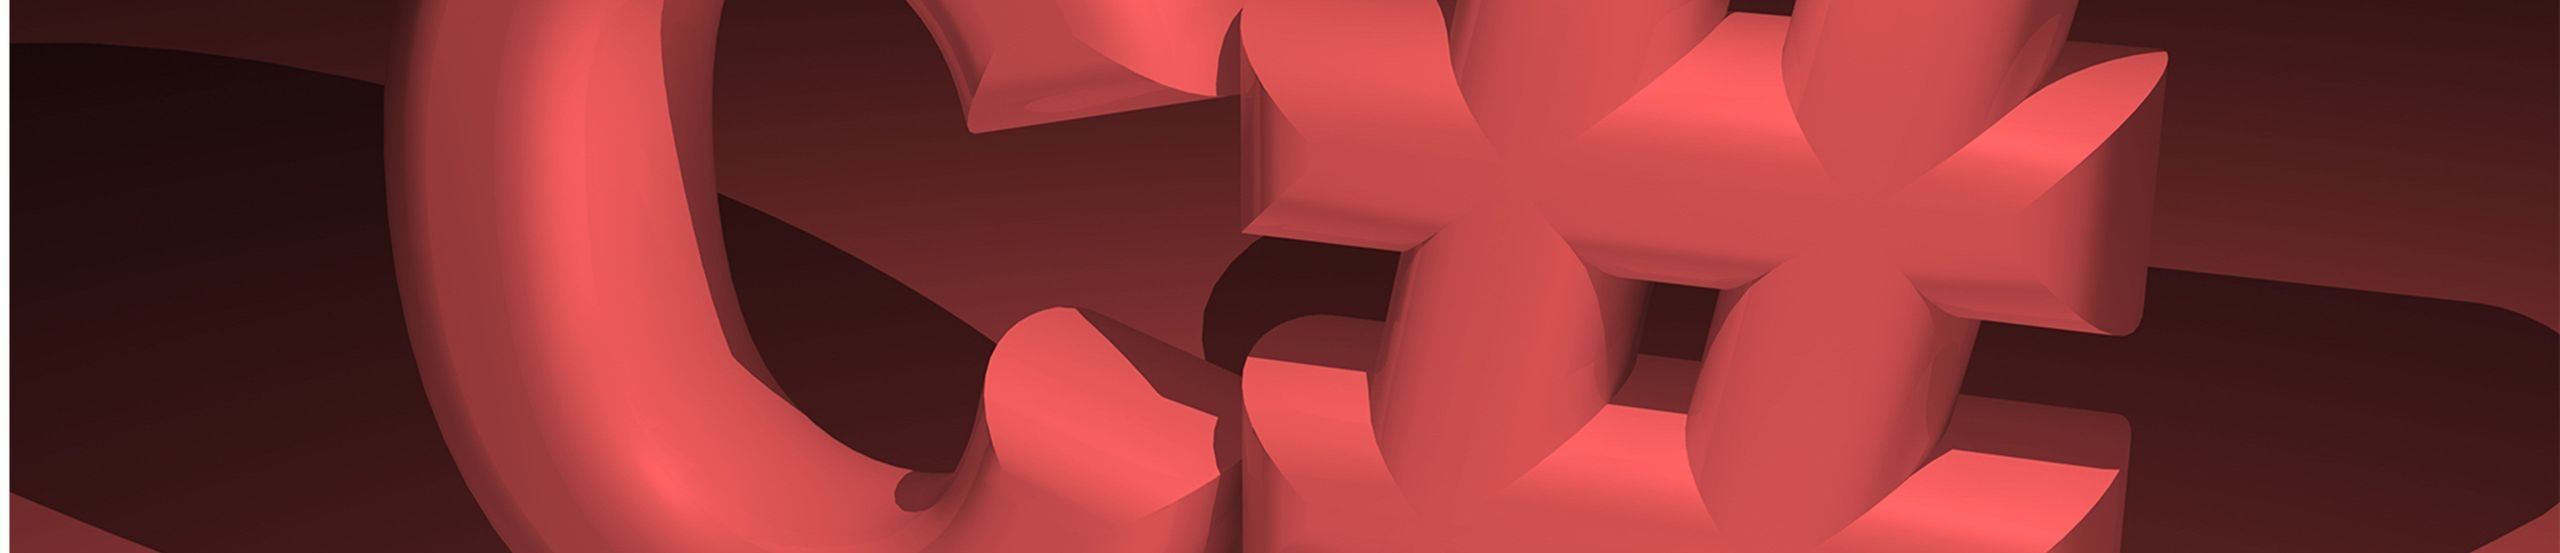 C#-Logo auf rotem Hintergrund